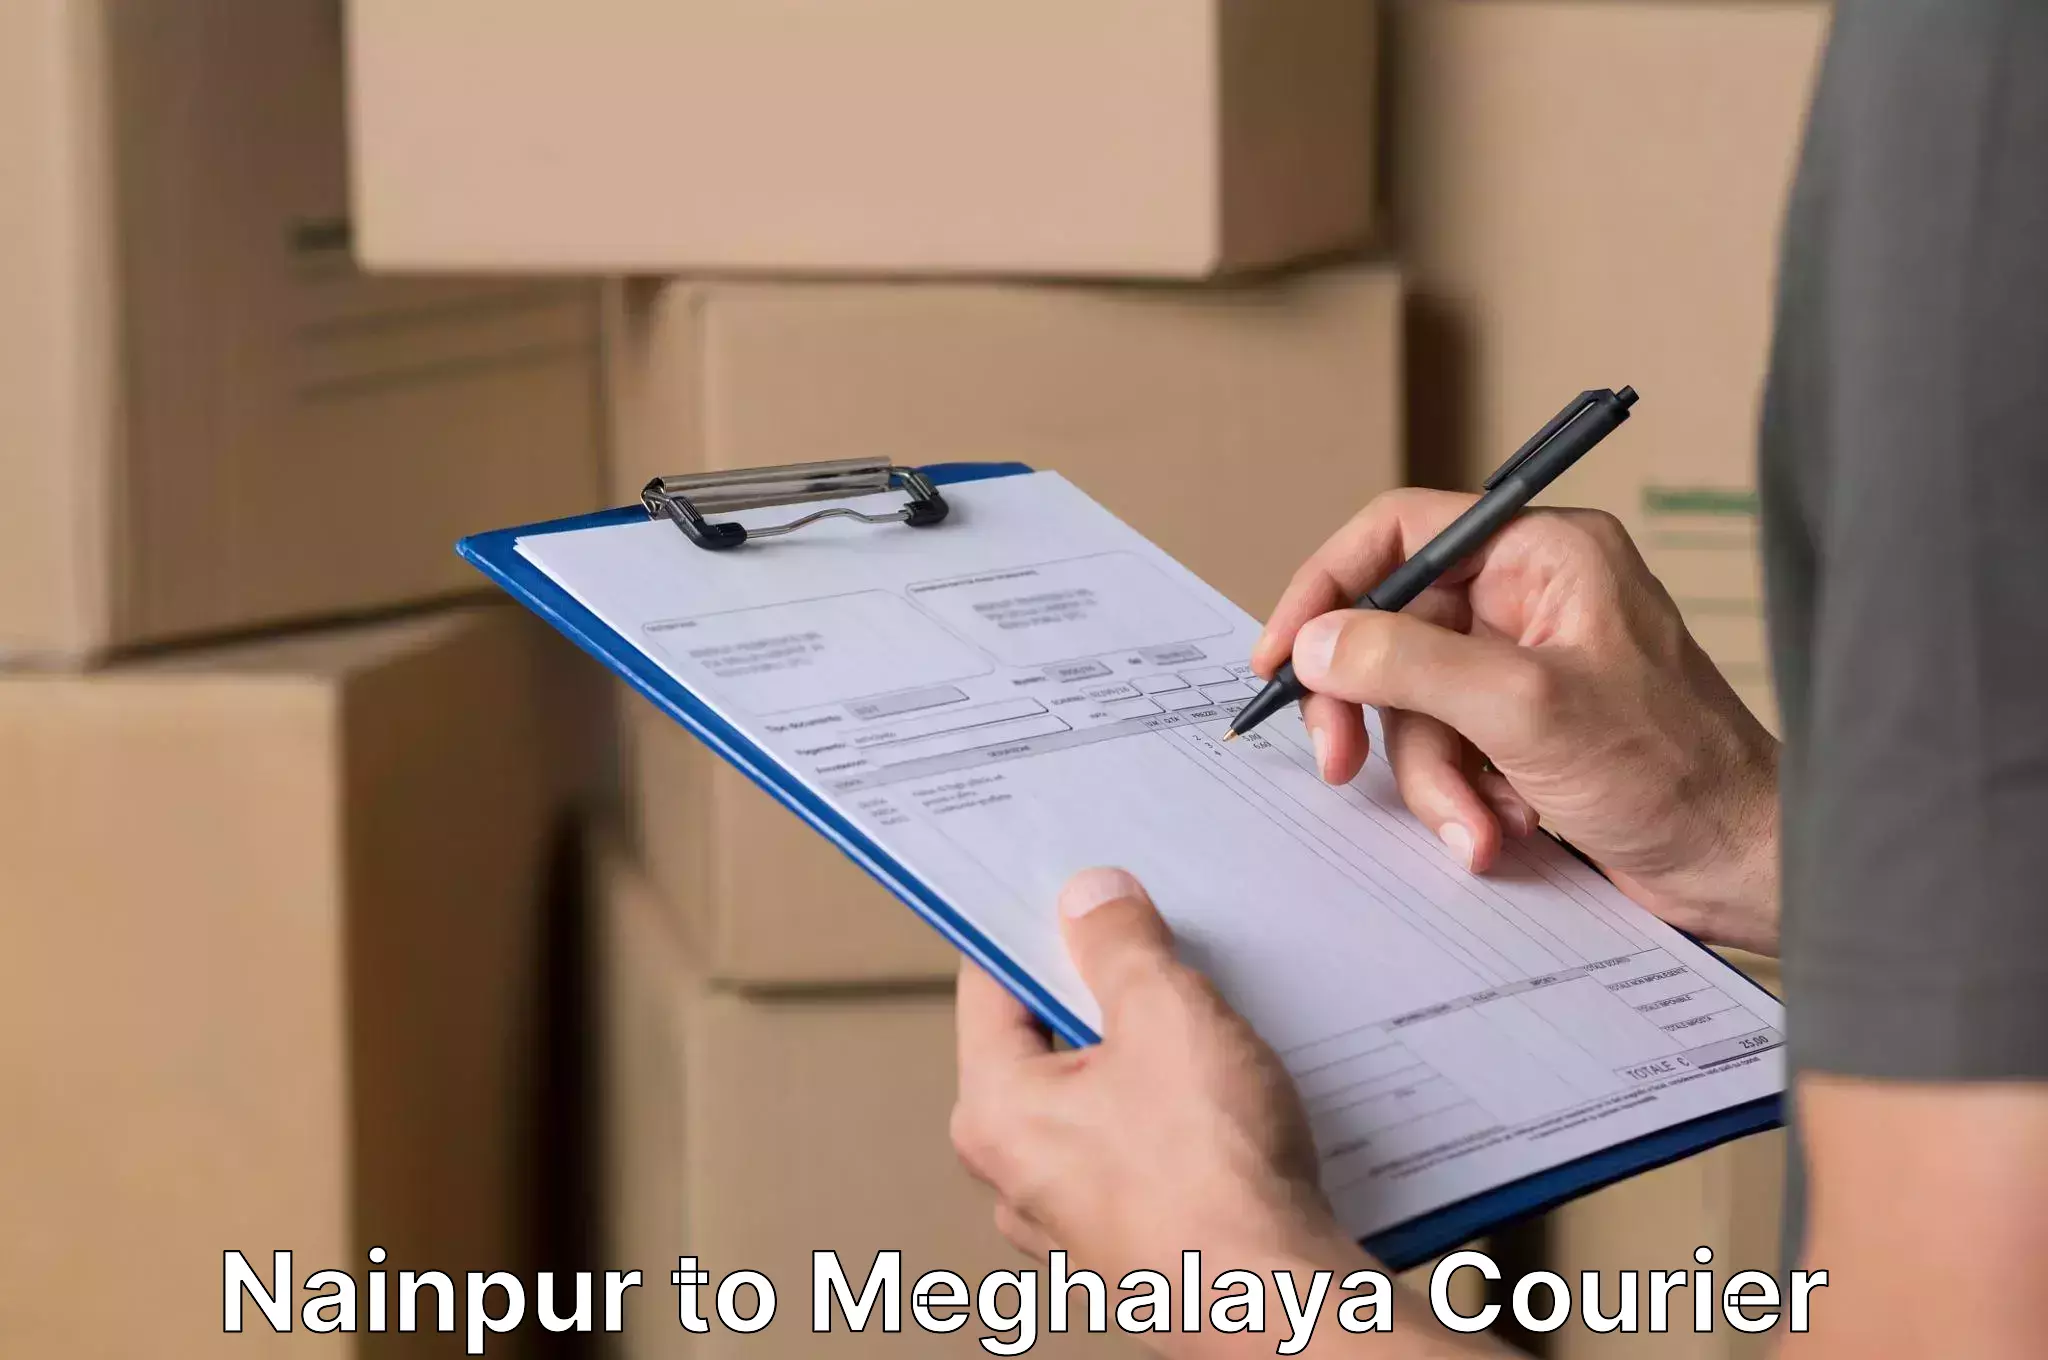 Moving and handling services Nainpur to Cherrapunji